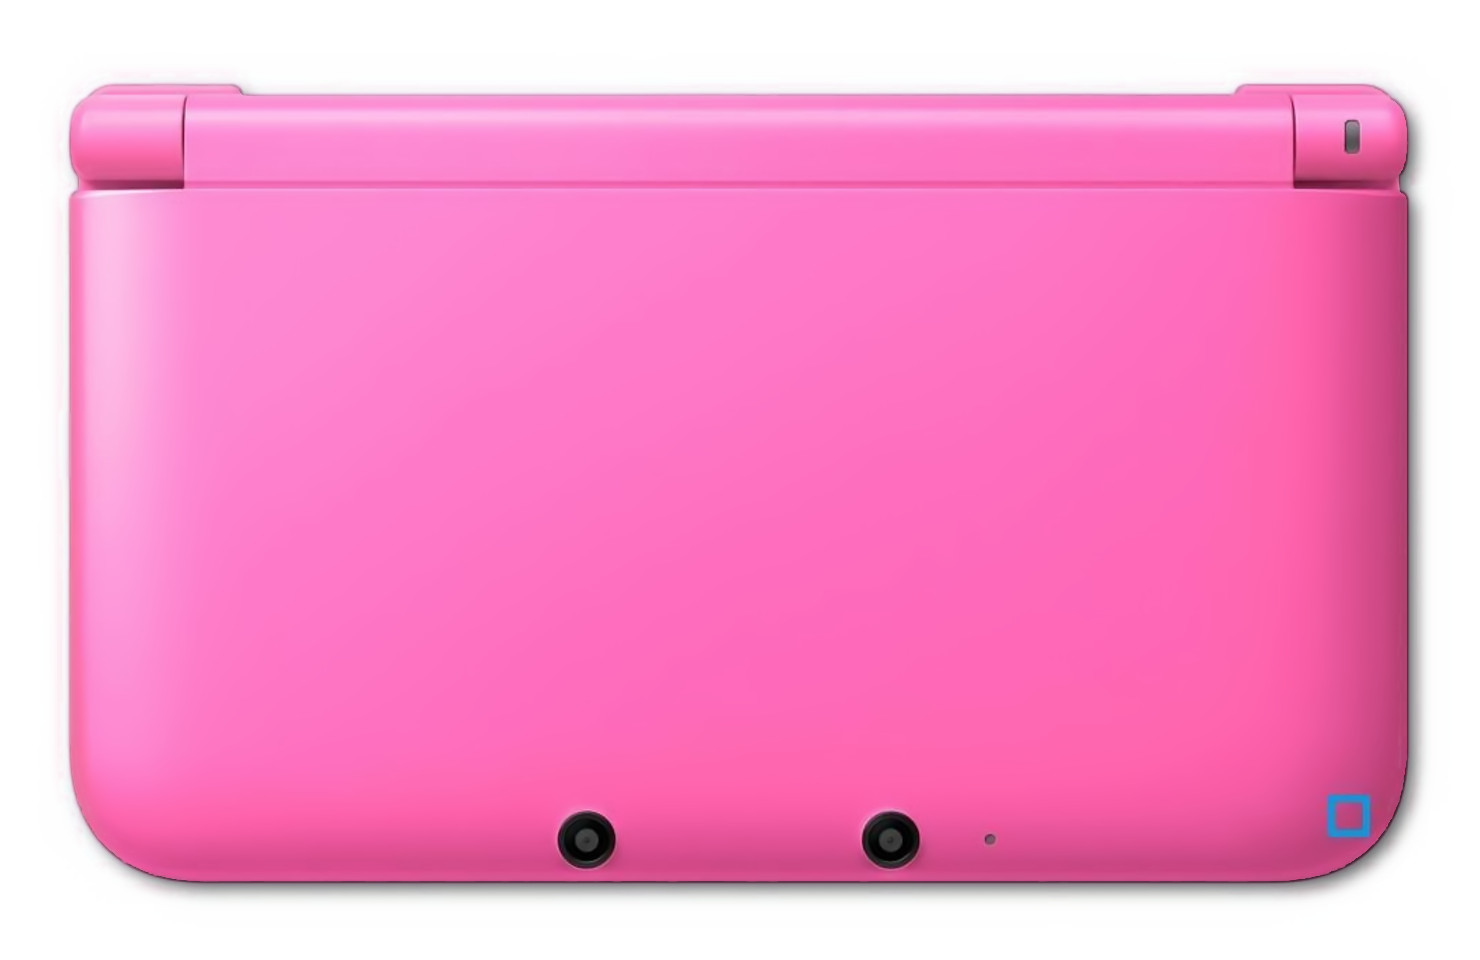 Unser vorläufiges Highlight: die Nintendo 3DS XL Konsole kostet in pink weniger als die Hälfte des Normalpreises